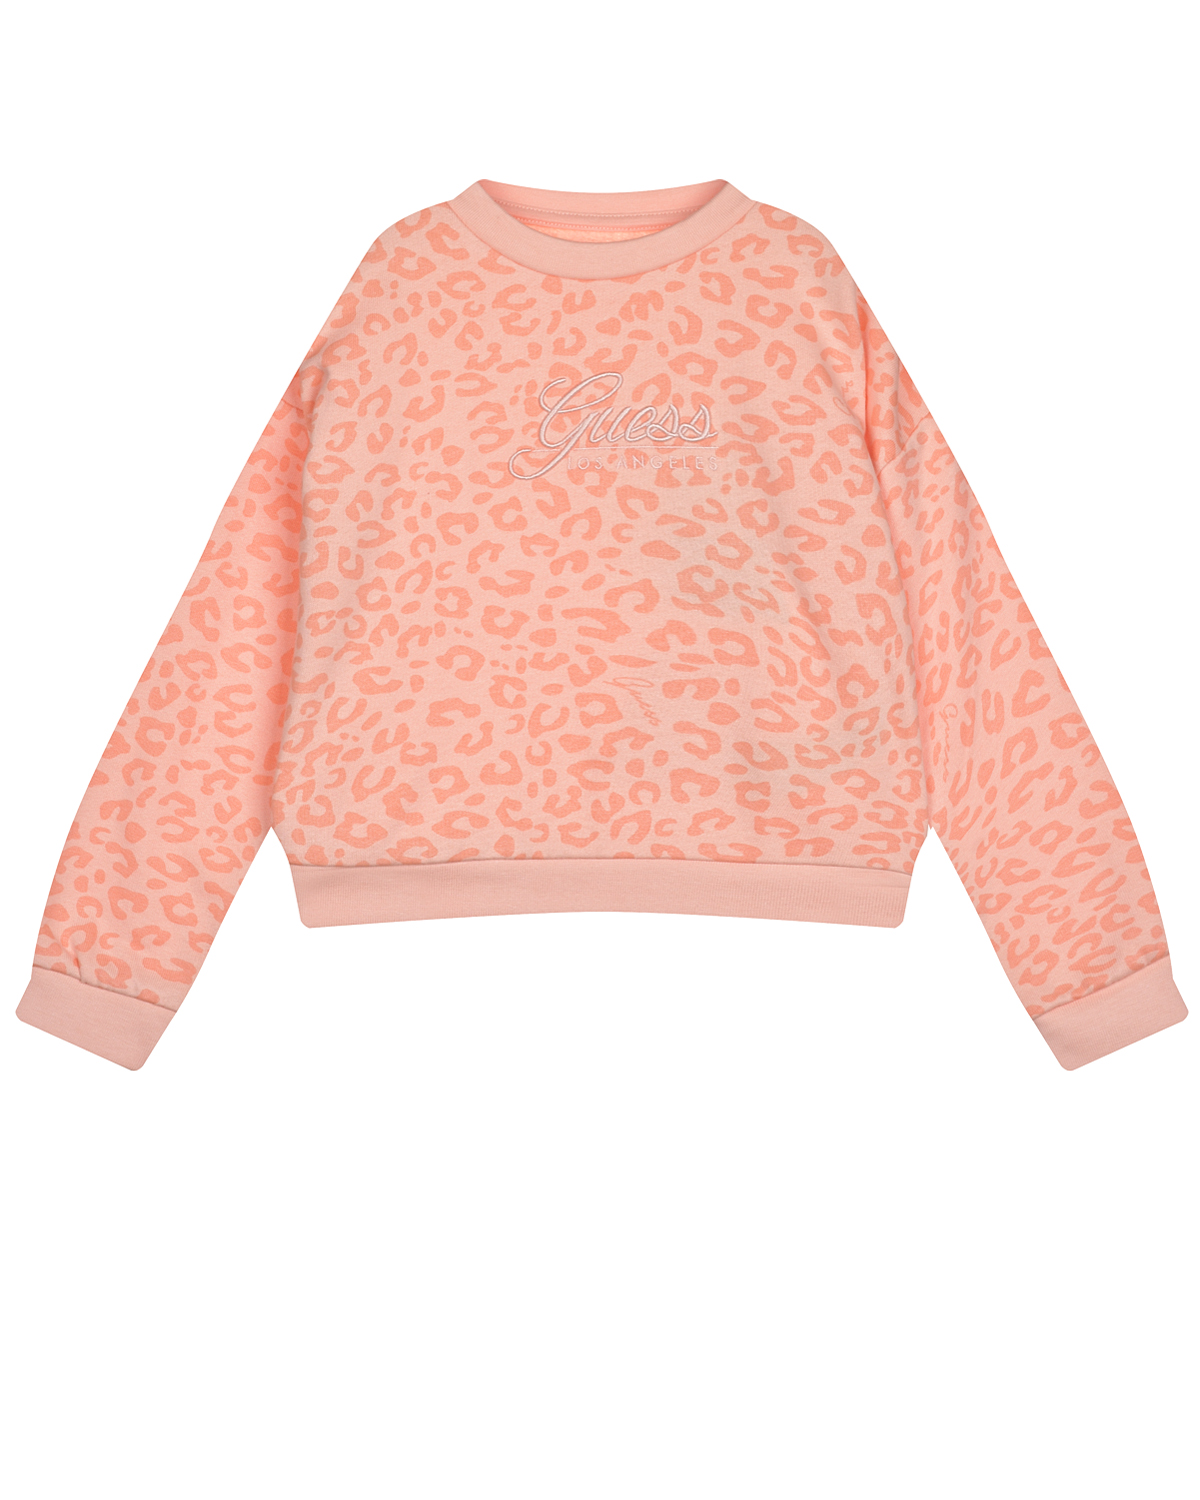 Толстовка персикового цвета с леопардовым принтом Guess детская, размер 92 - фото 1